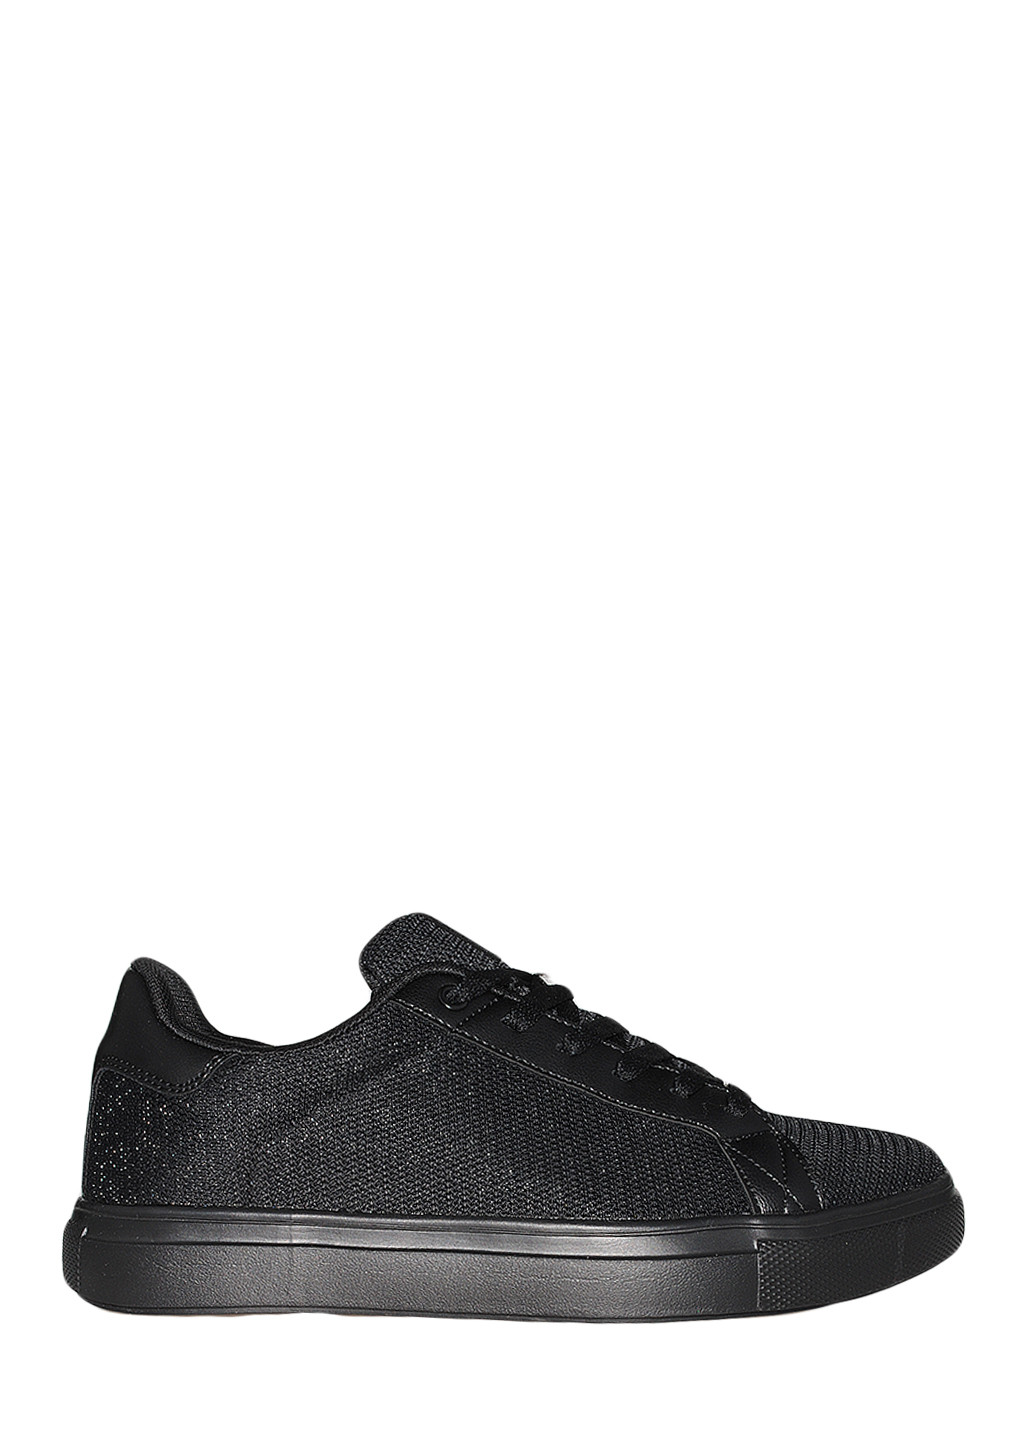 Черные демисезонные кроссовки st1350-8 black-black Stilli